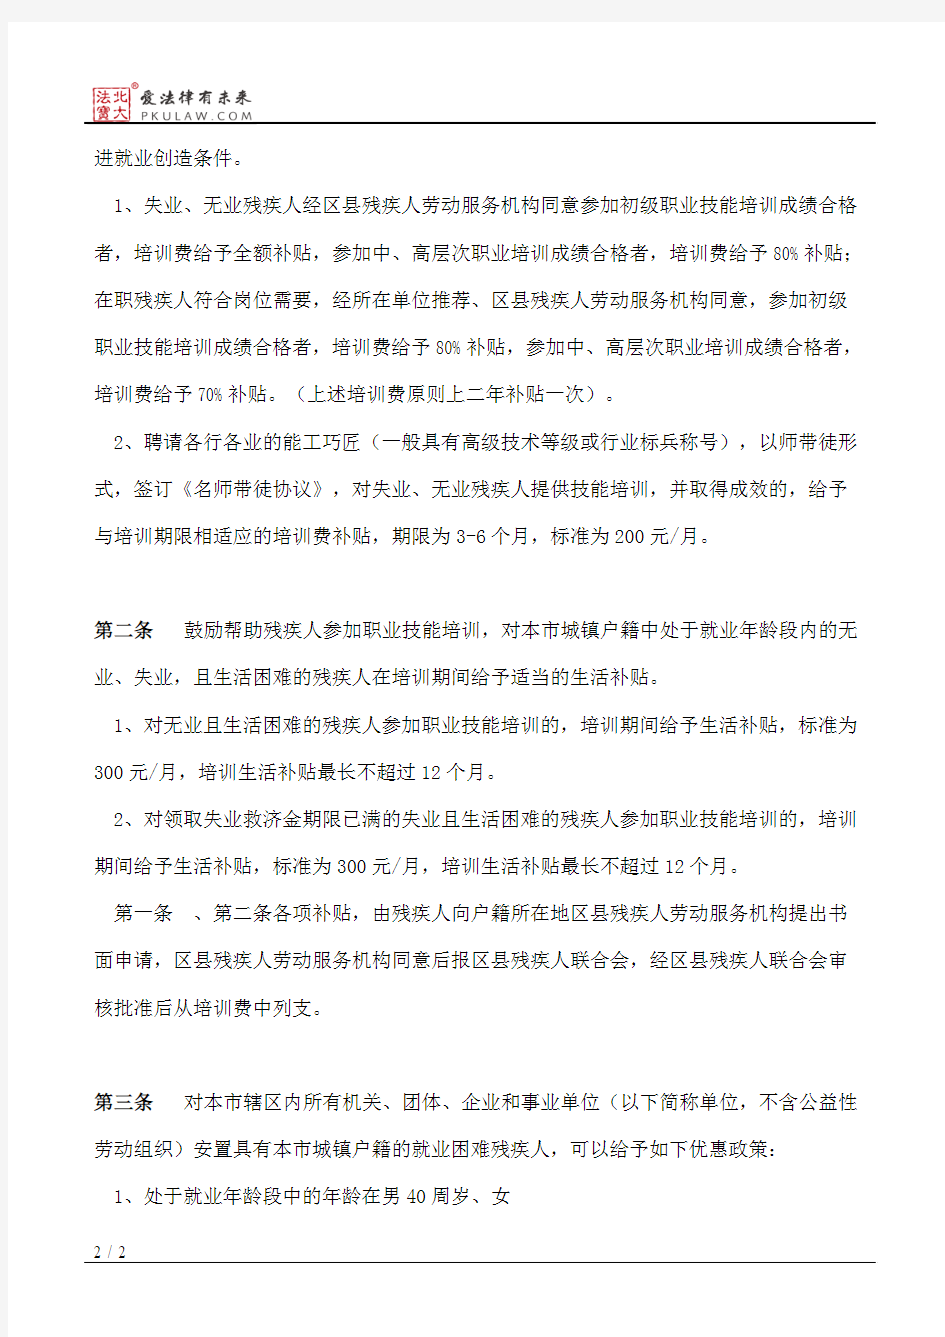 上海市残疾人联合会关于促进本市残疾人劳动就业的暂行办法